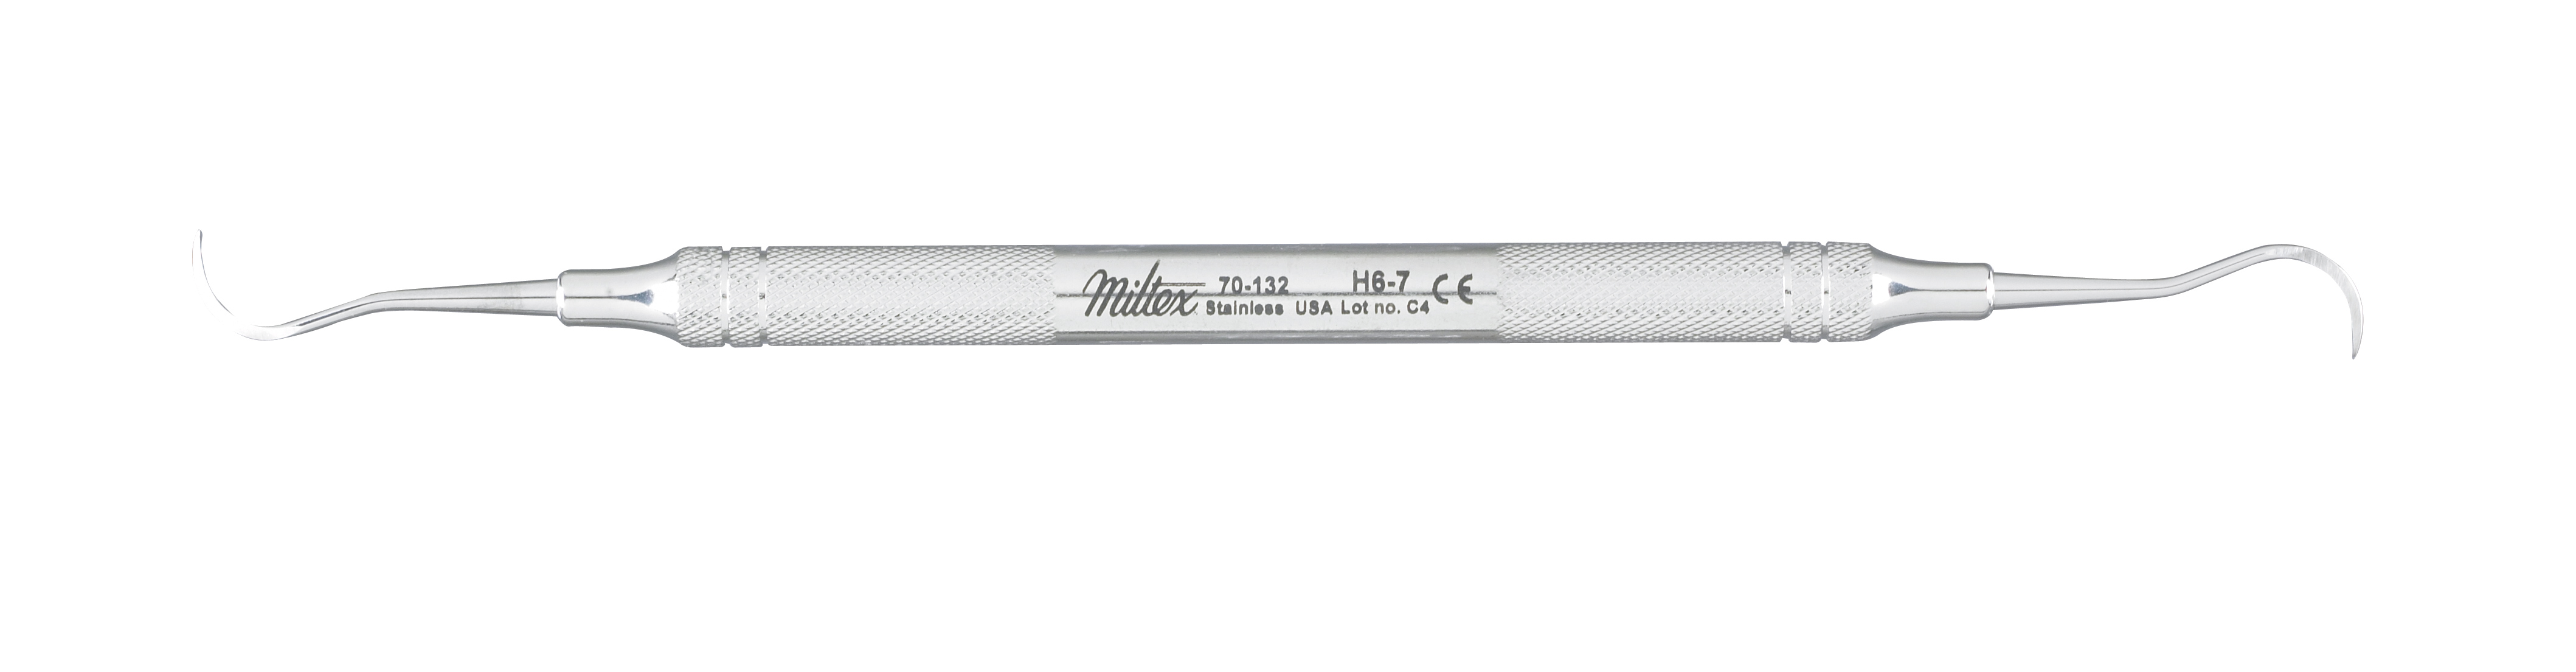 h6-7-scaler-lightweight-round-handle-70-132-miltex.jpg